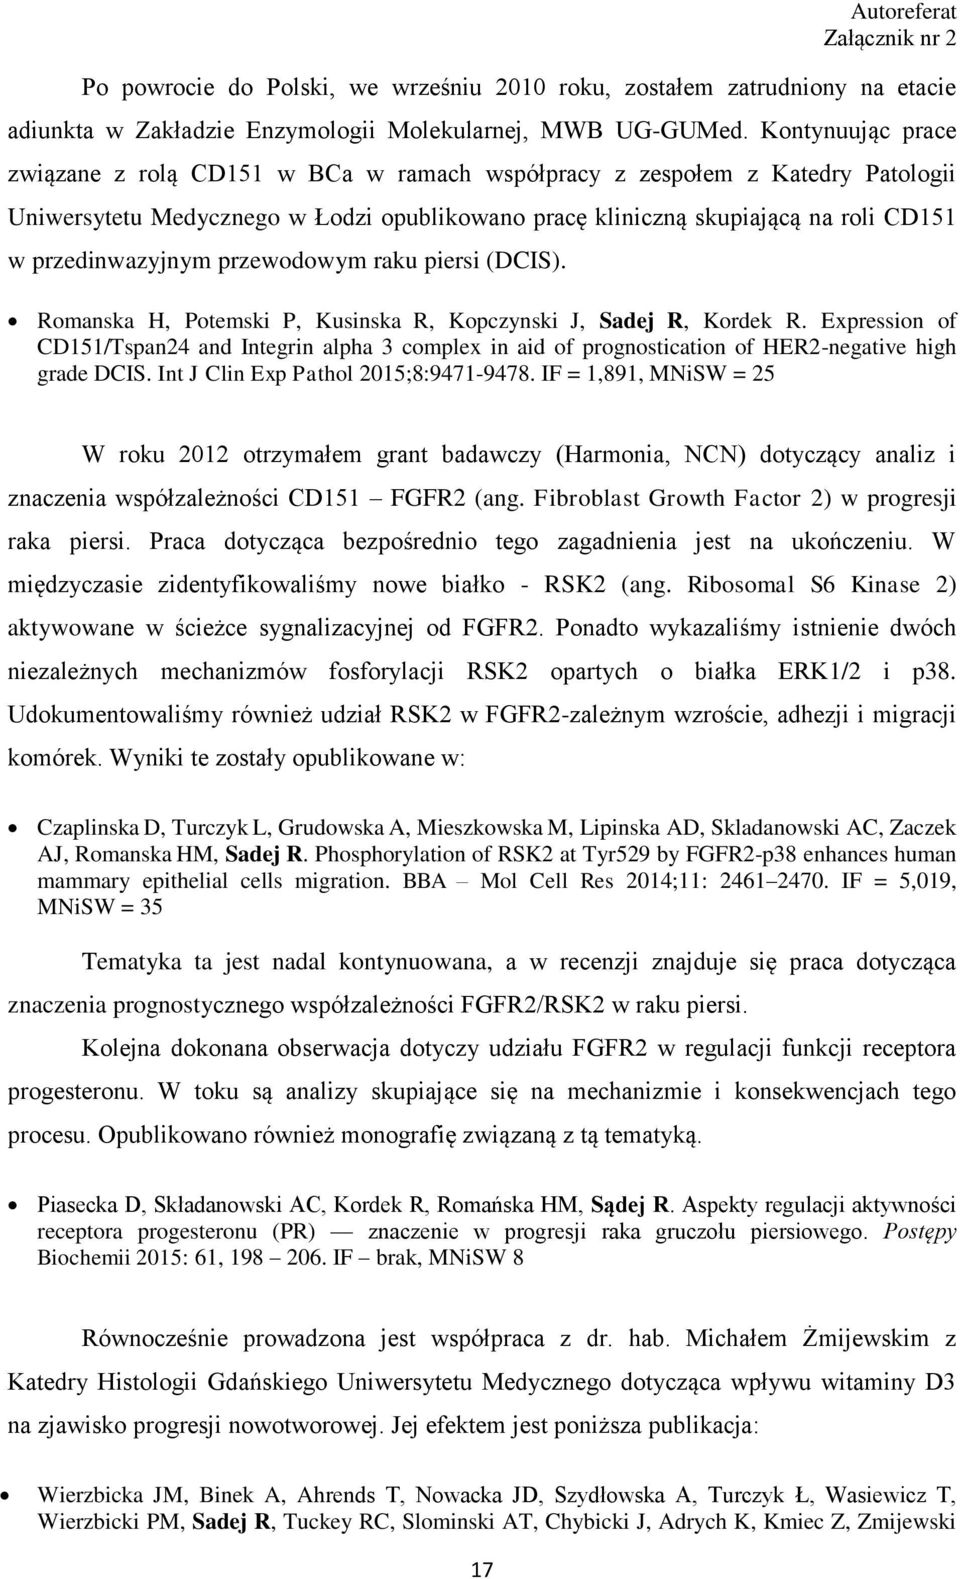 przedinwazyjnym przewodowym raku piersi (DCIS). Romanska H, Potemski P, Kusinska R, Kopczynski J, Sadej R, Kordek R.